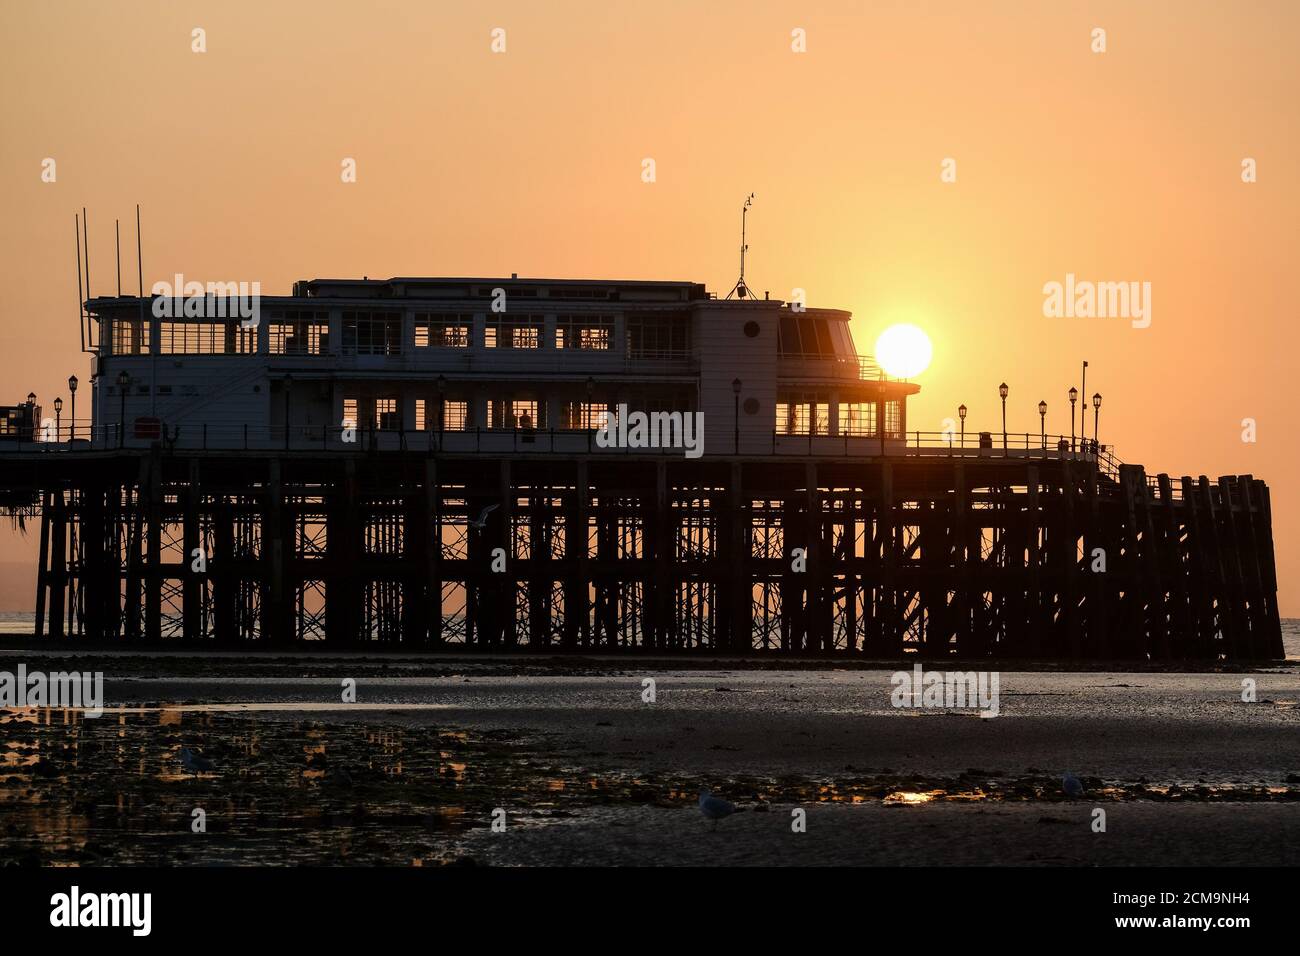 Worthing Beach, Worthing, Reino Unido. 17 de septiembre de 2020. El muelle del año Art Deco 2019 está perfilado por el sol mientras se levanta en una cálida mañana de septiembre. Imagen de crédito: Julie Edwards/Alamy Live News Foto de stock